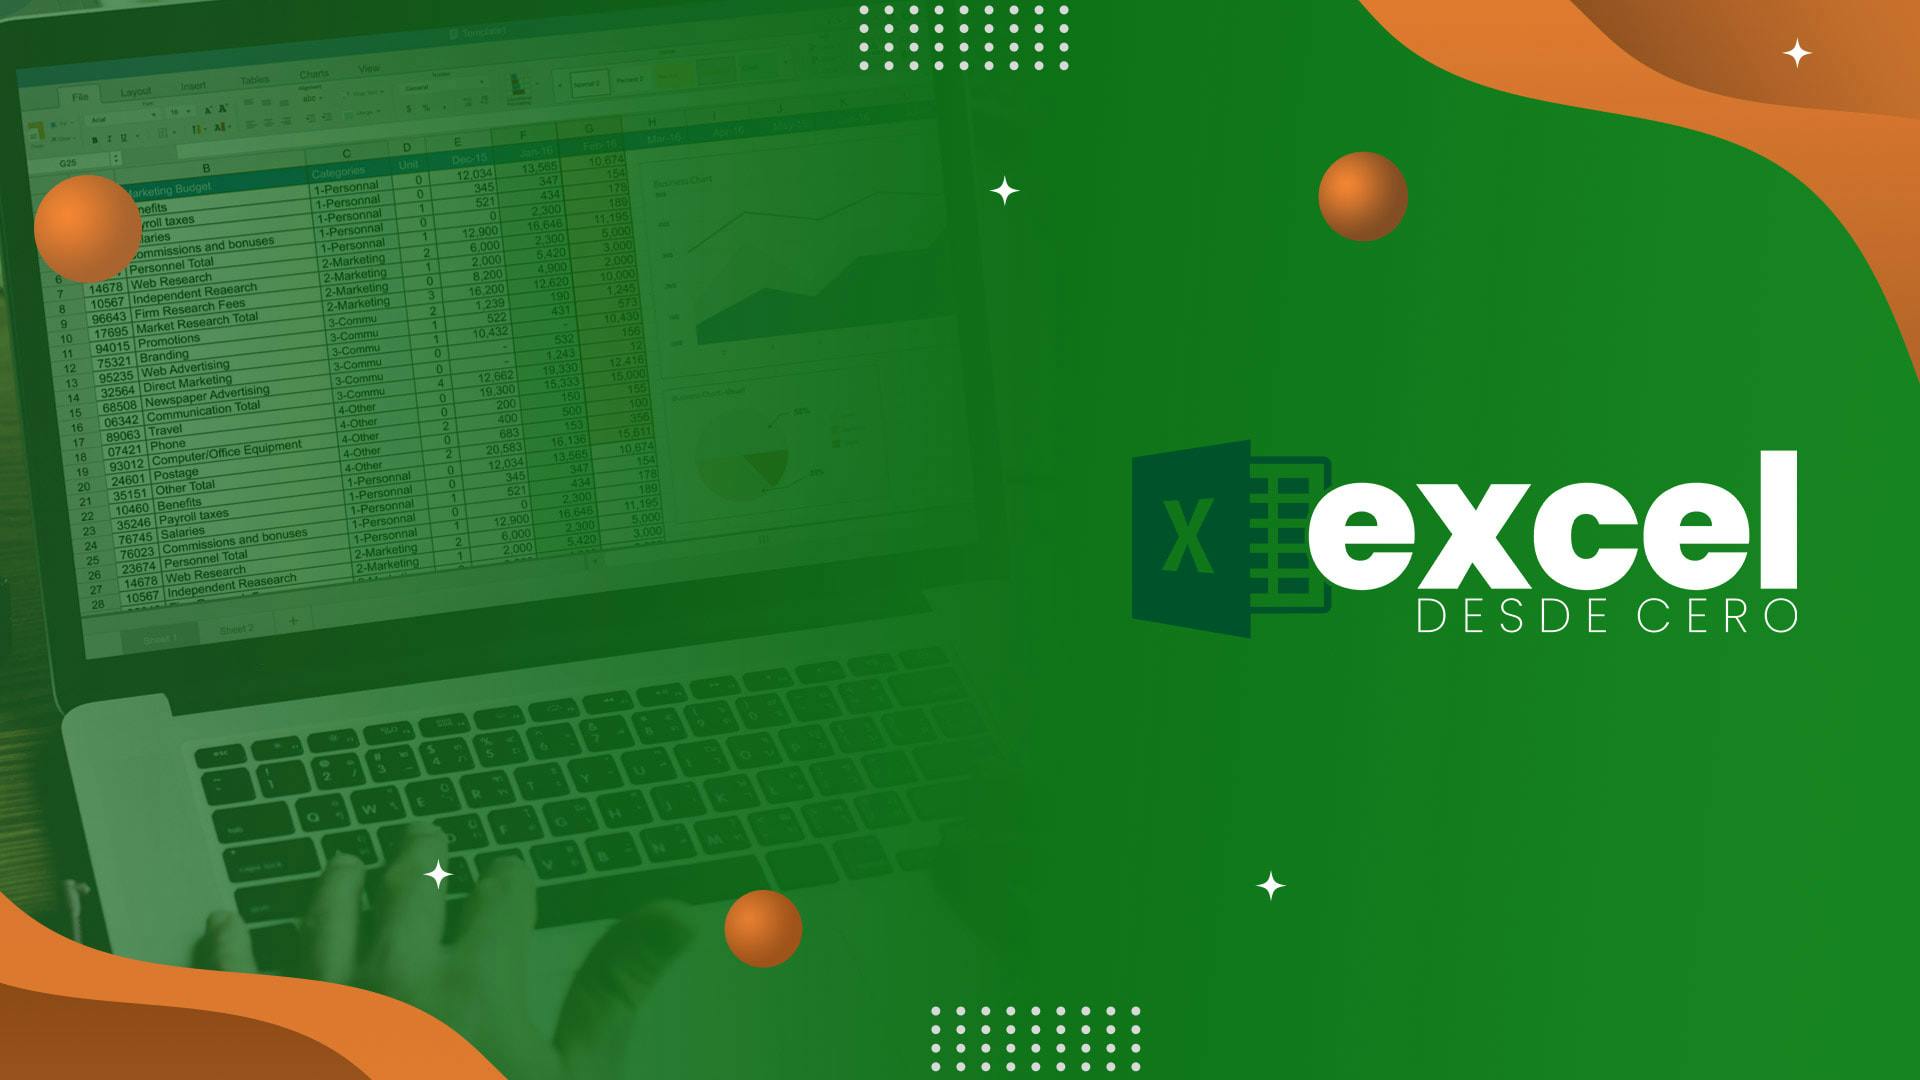 Excel - Desde cero